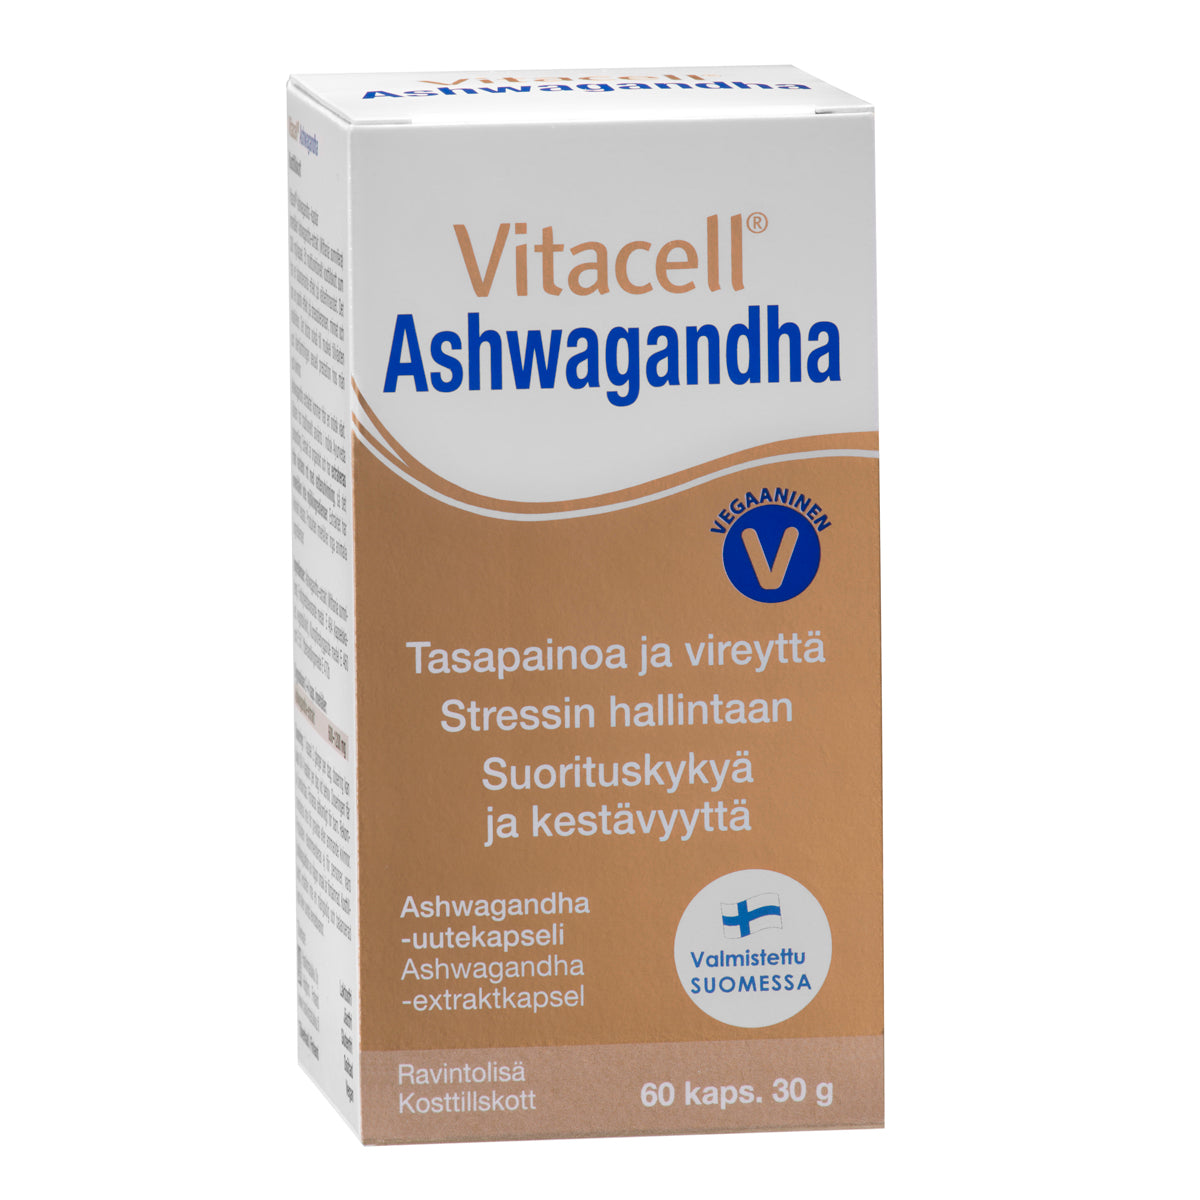 Vitacell Ashwagandha 60 kaps.